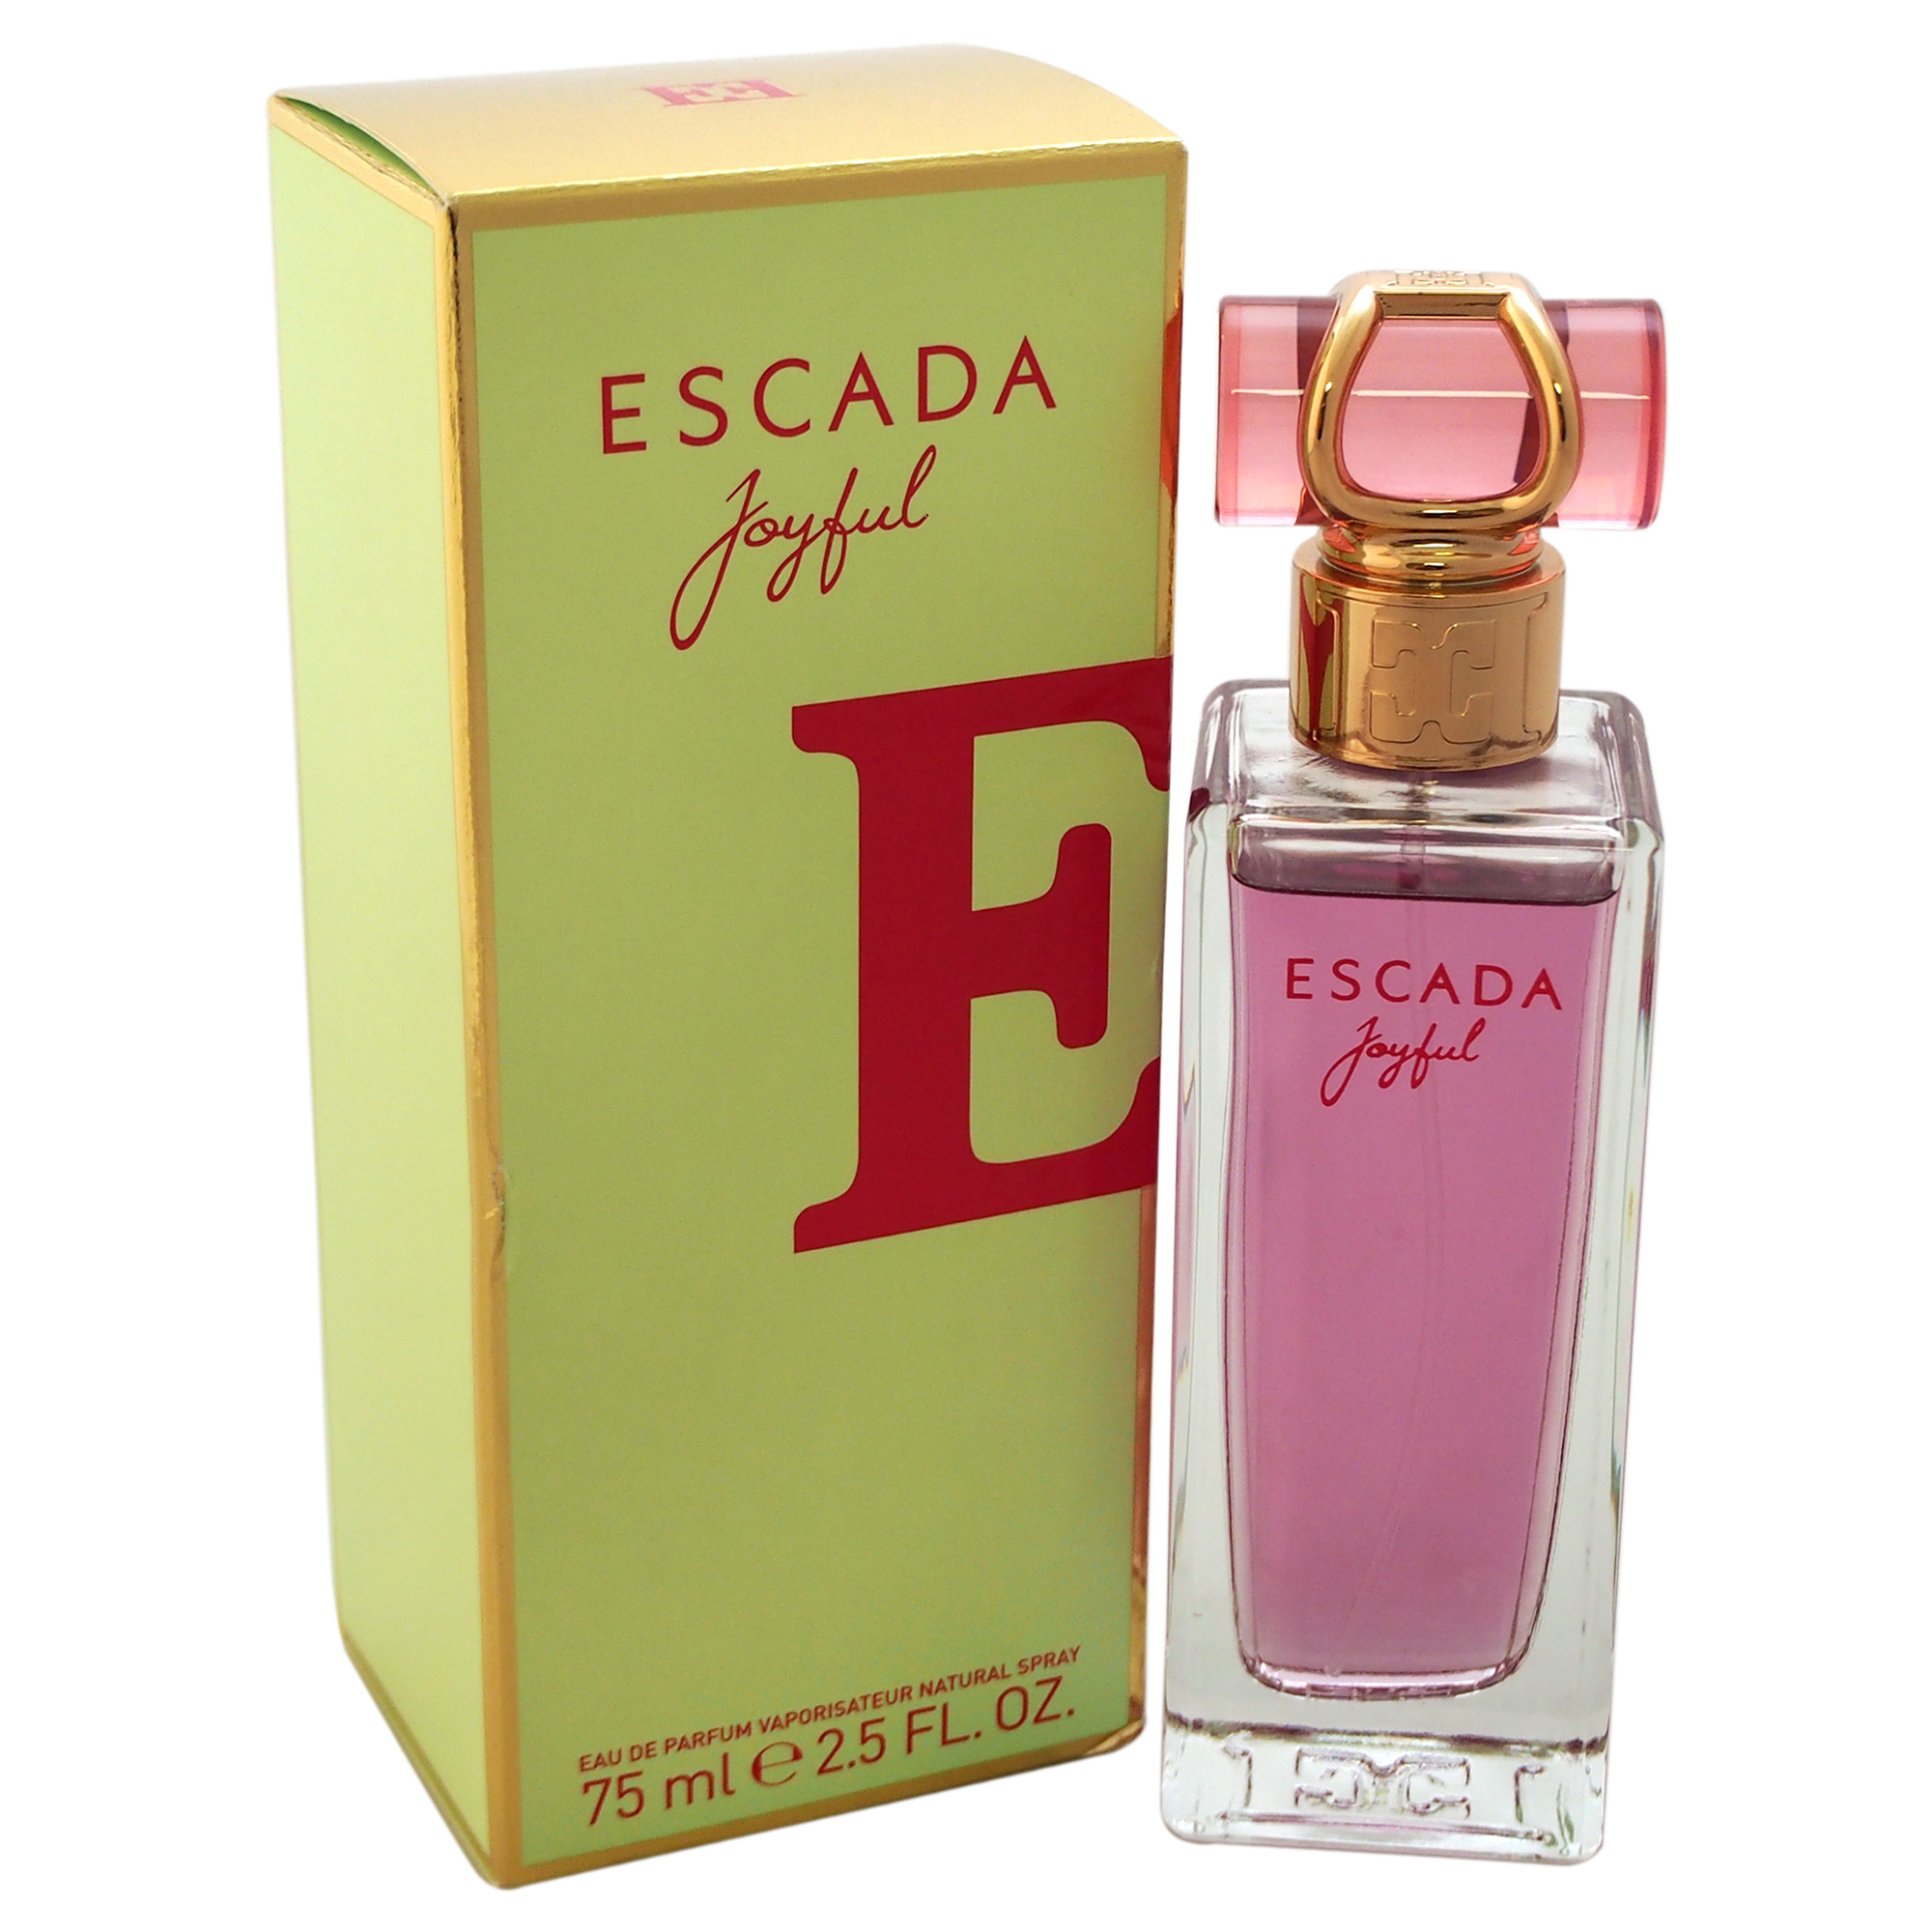 Escada Joyful by Escada for Women - 2.5 oz EDP Spray